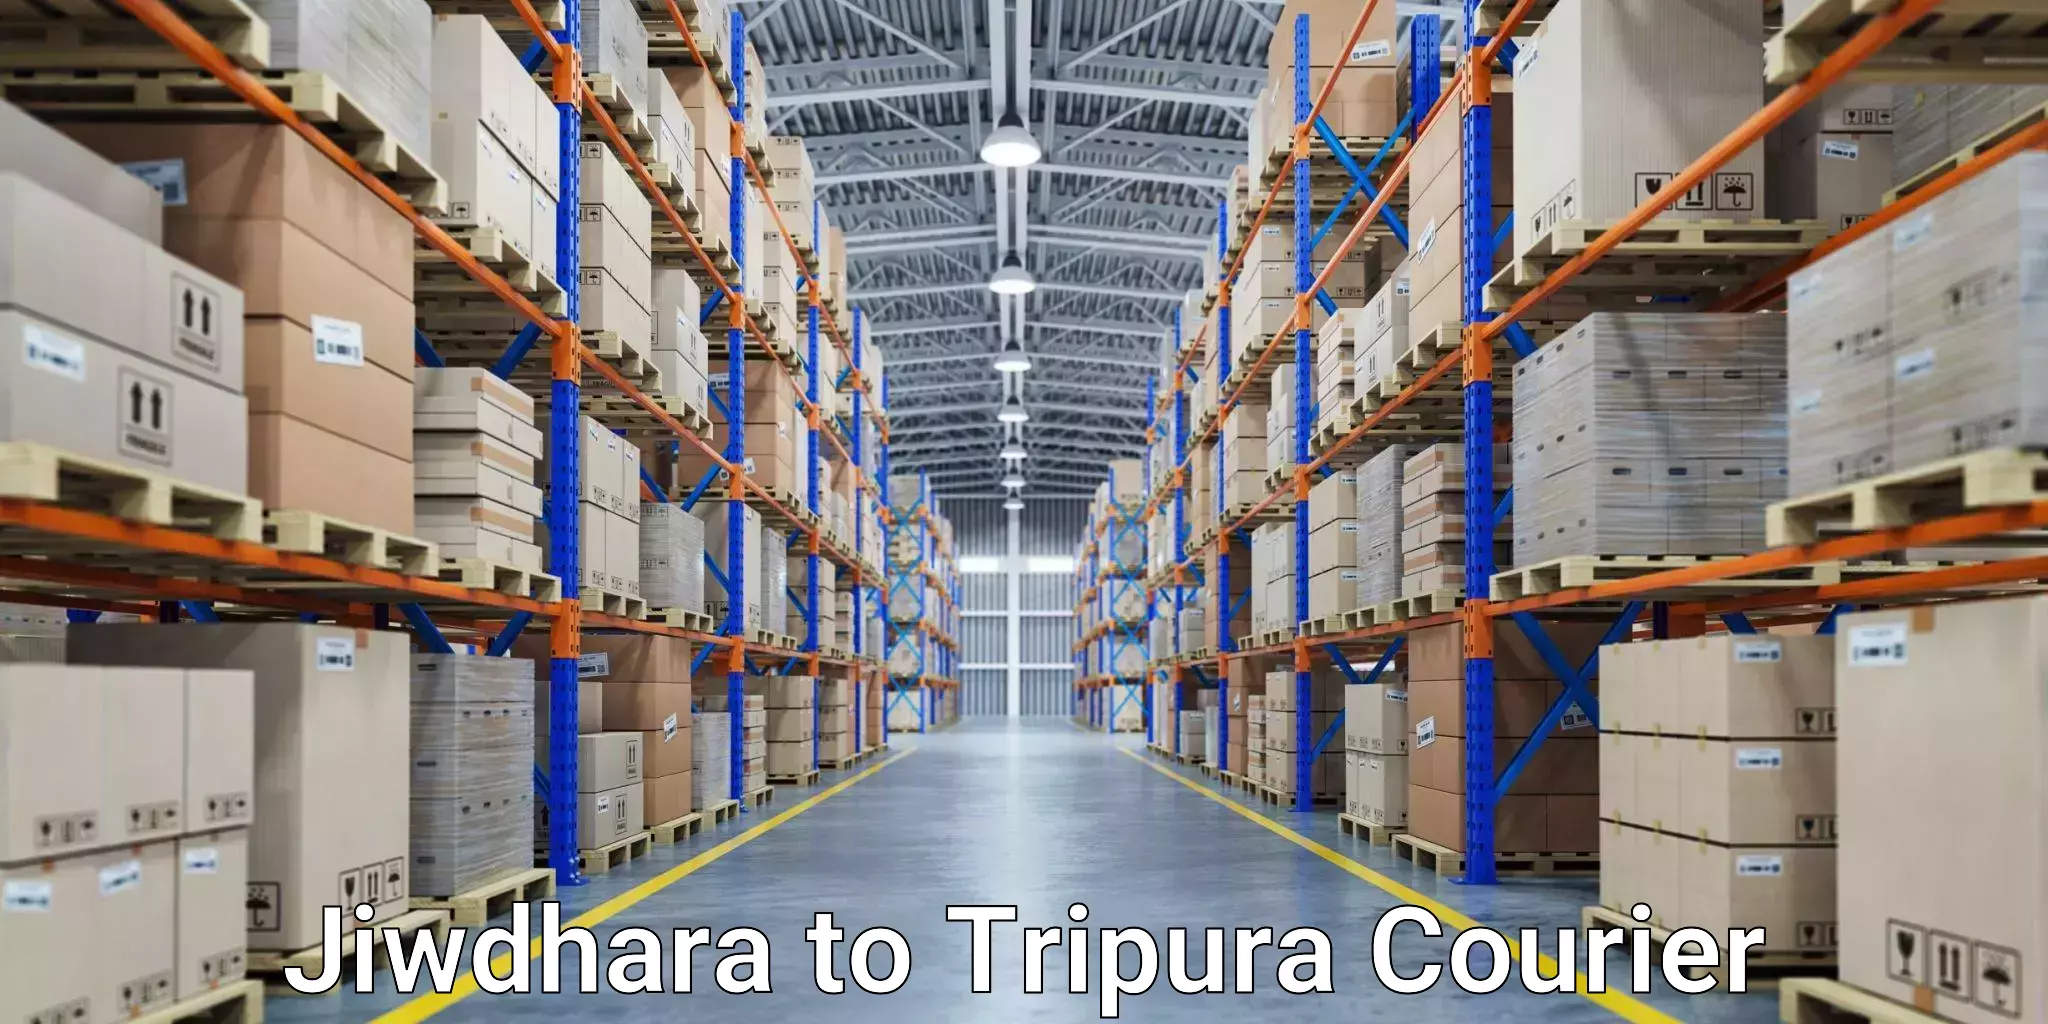 Courier service partnerships Jiwdhara to Sonamura